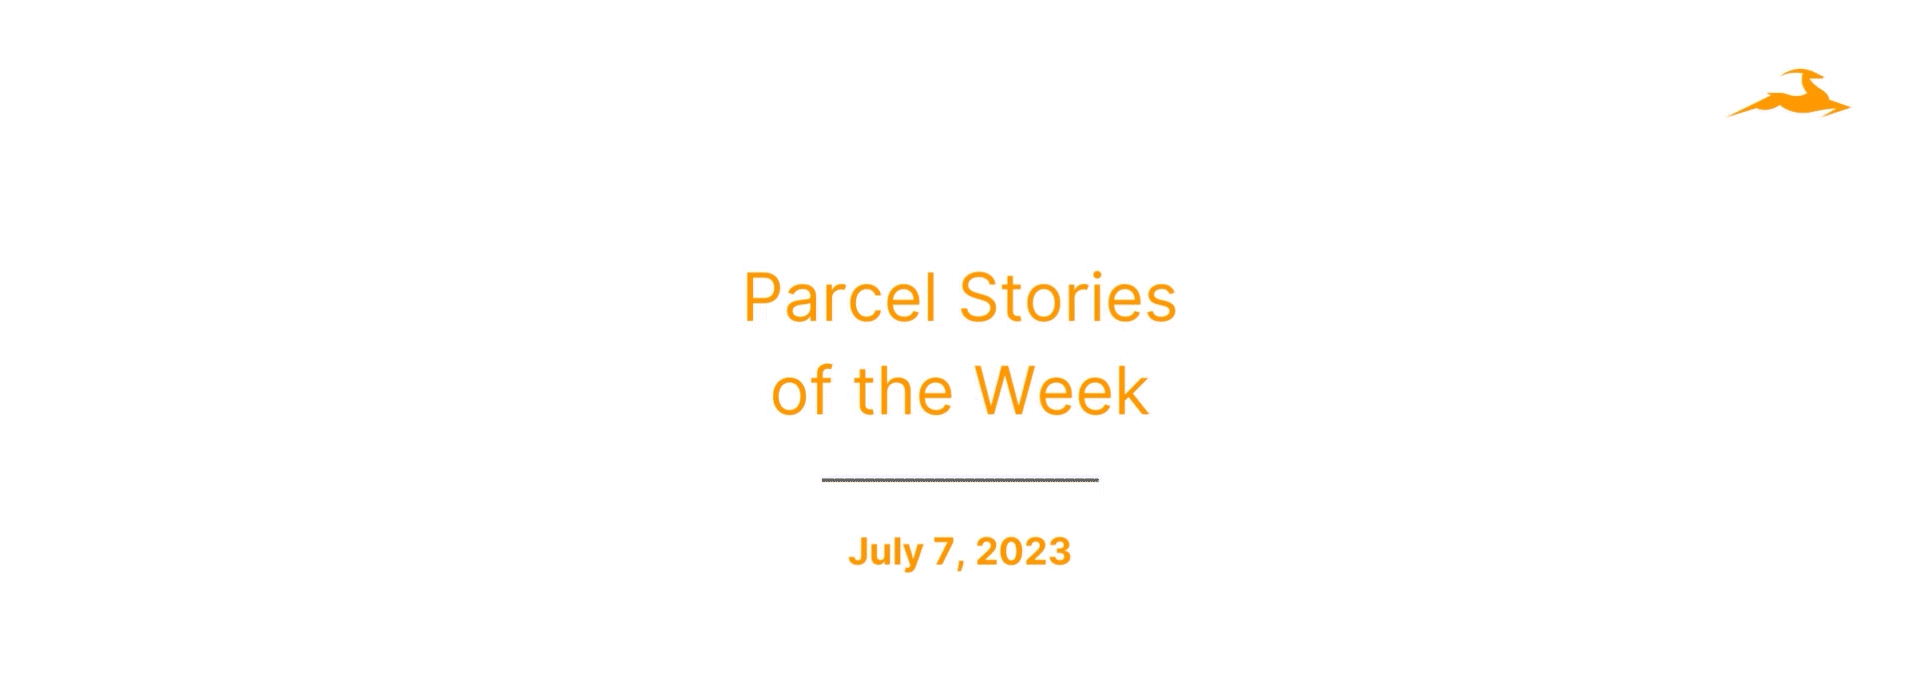 This Week in Parcel: July 7, 2023